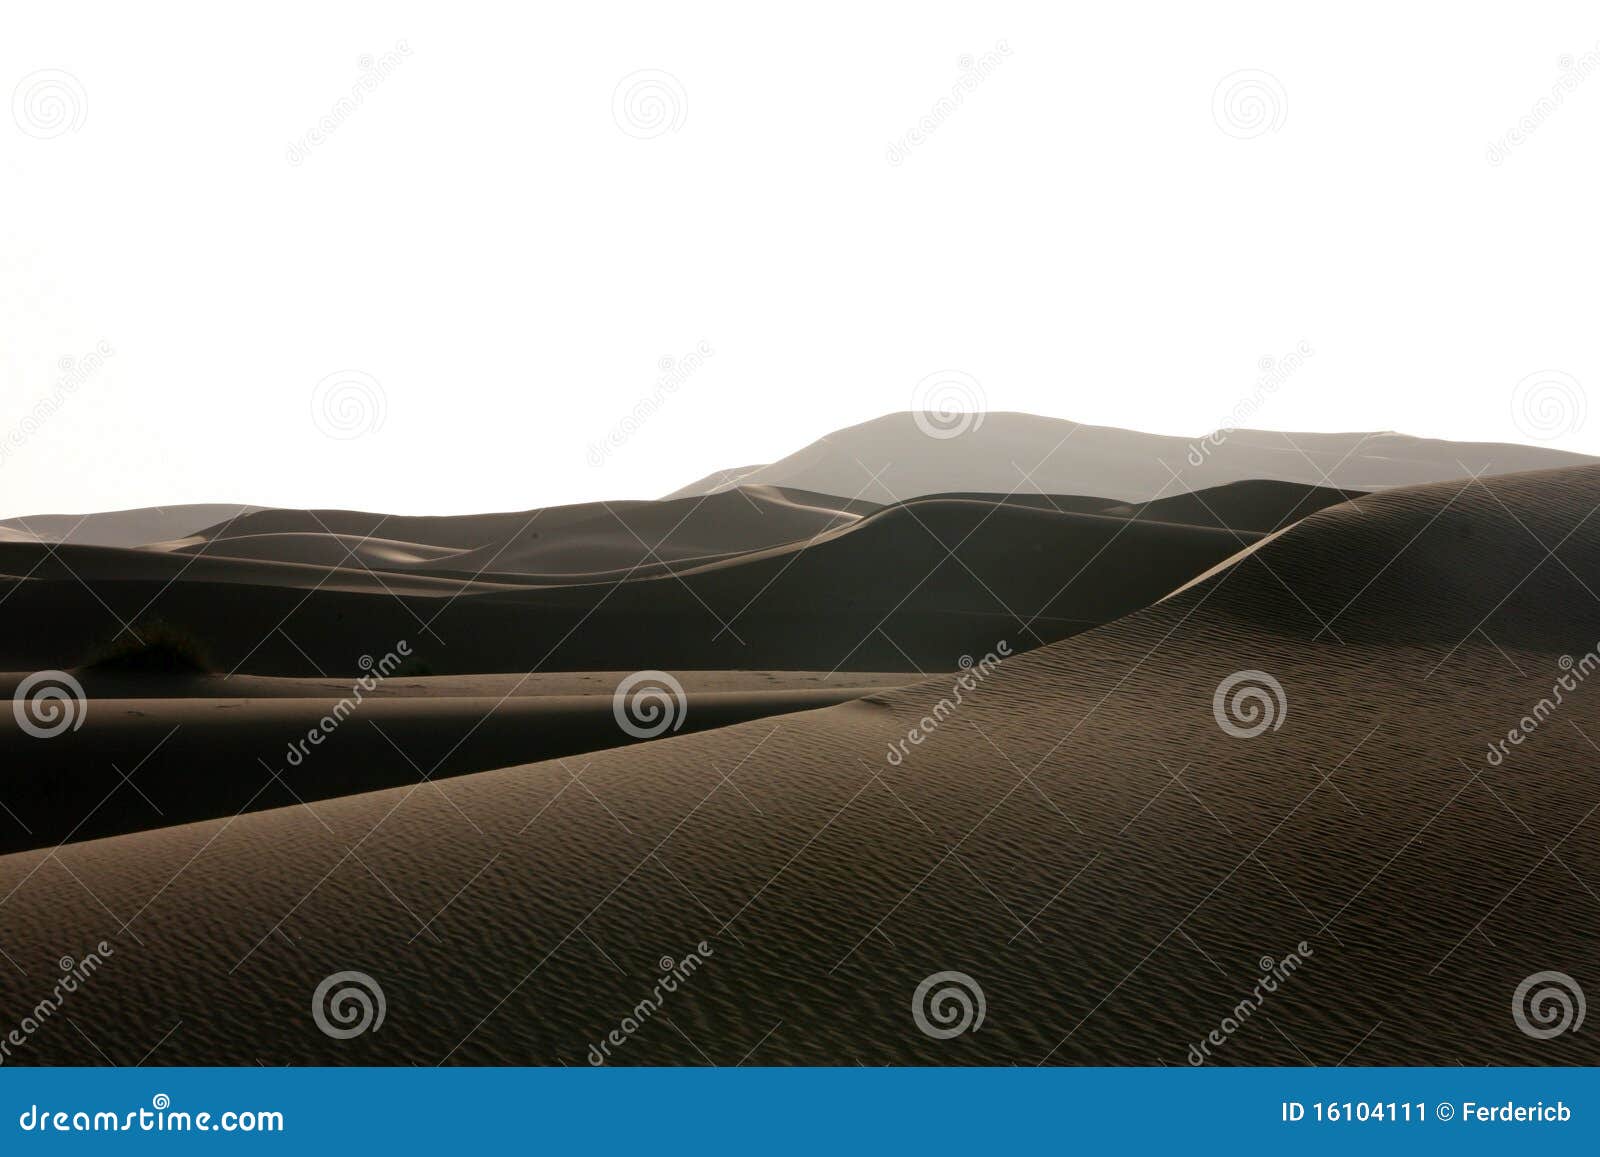 merzouga dunes shades